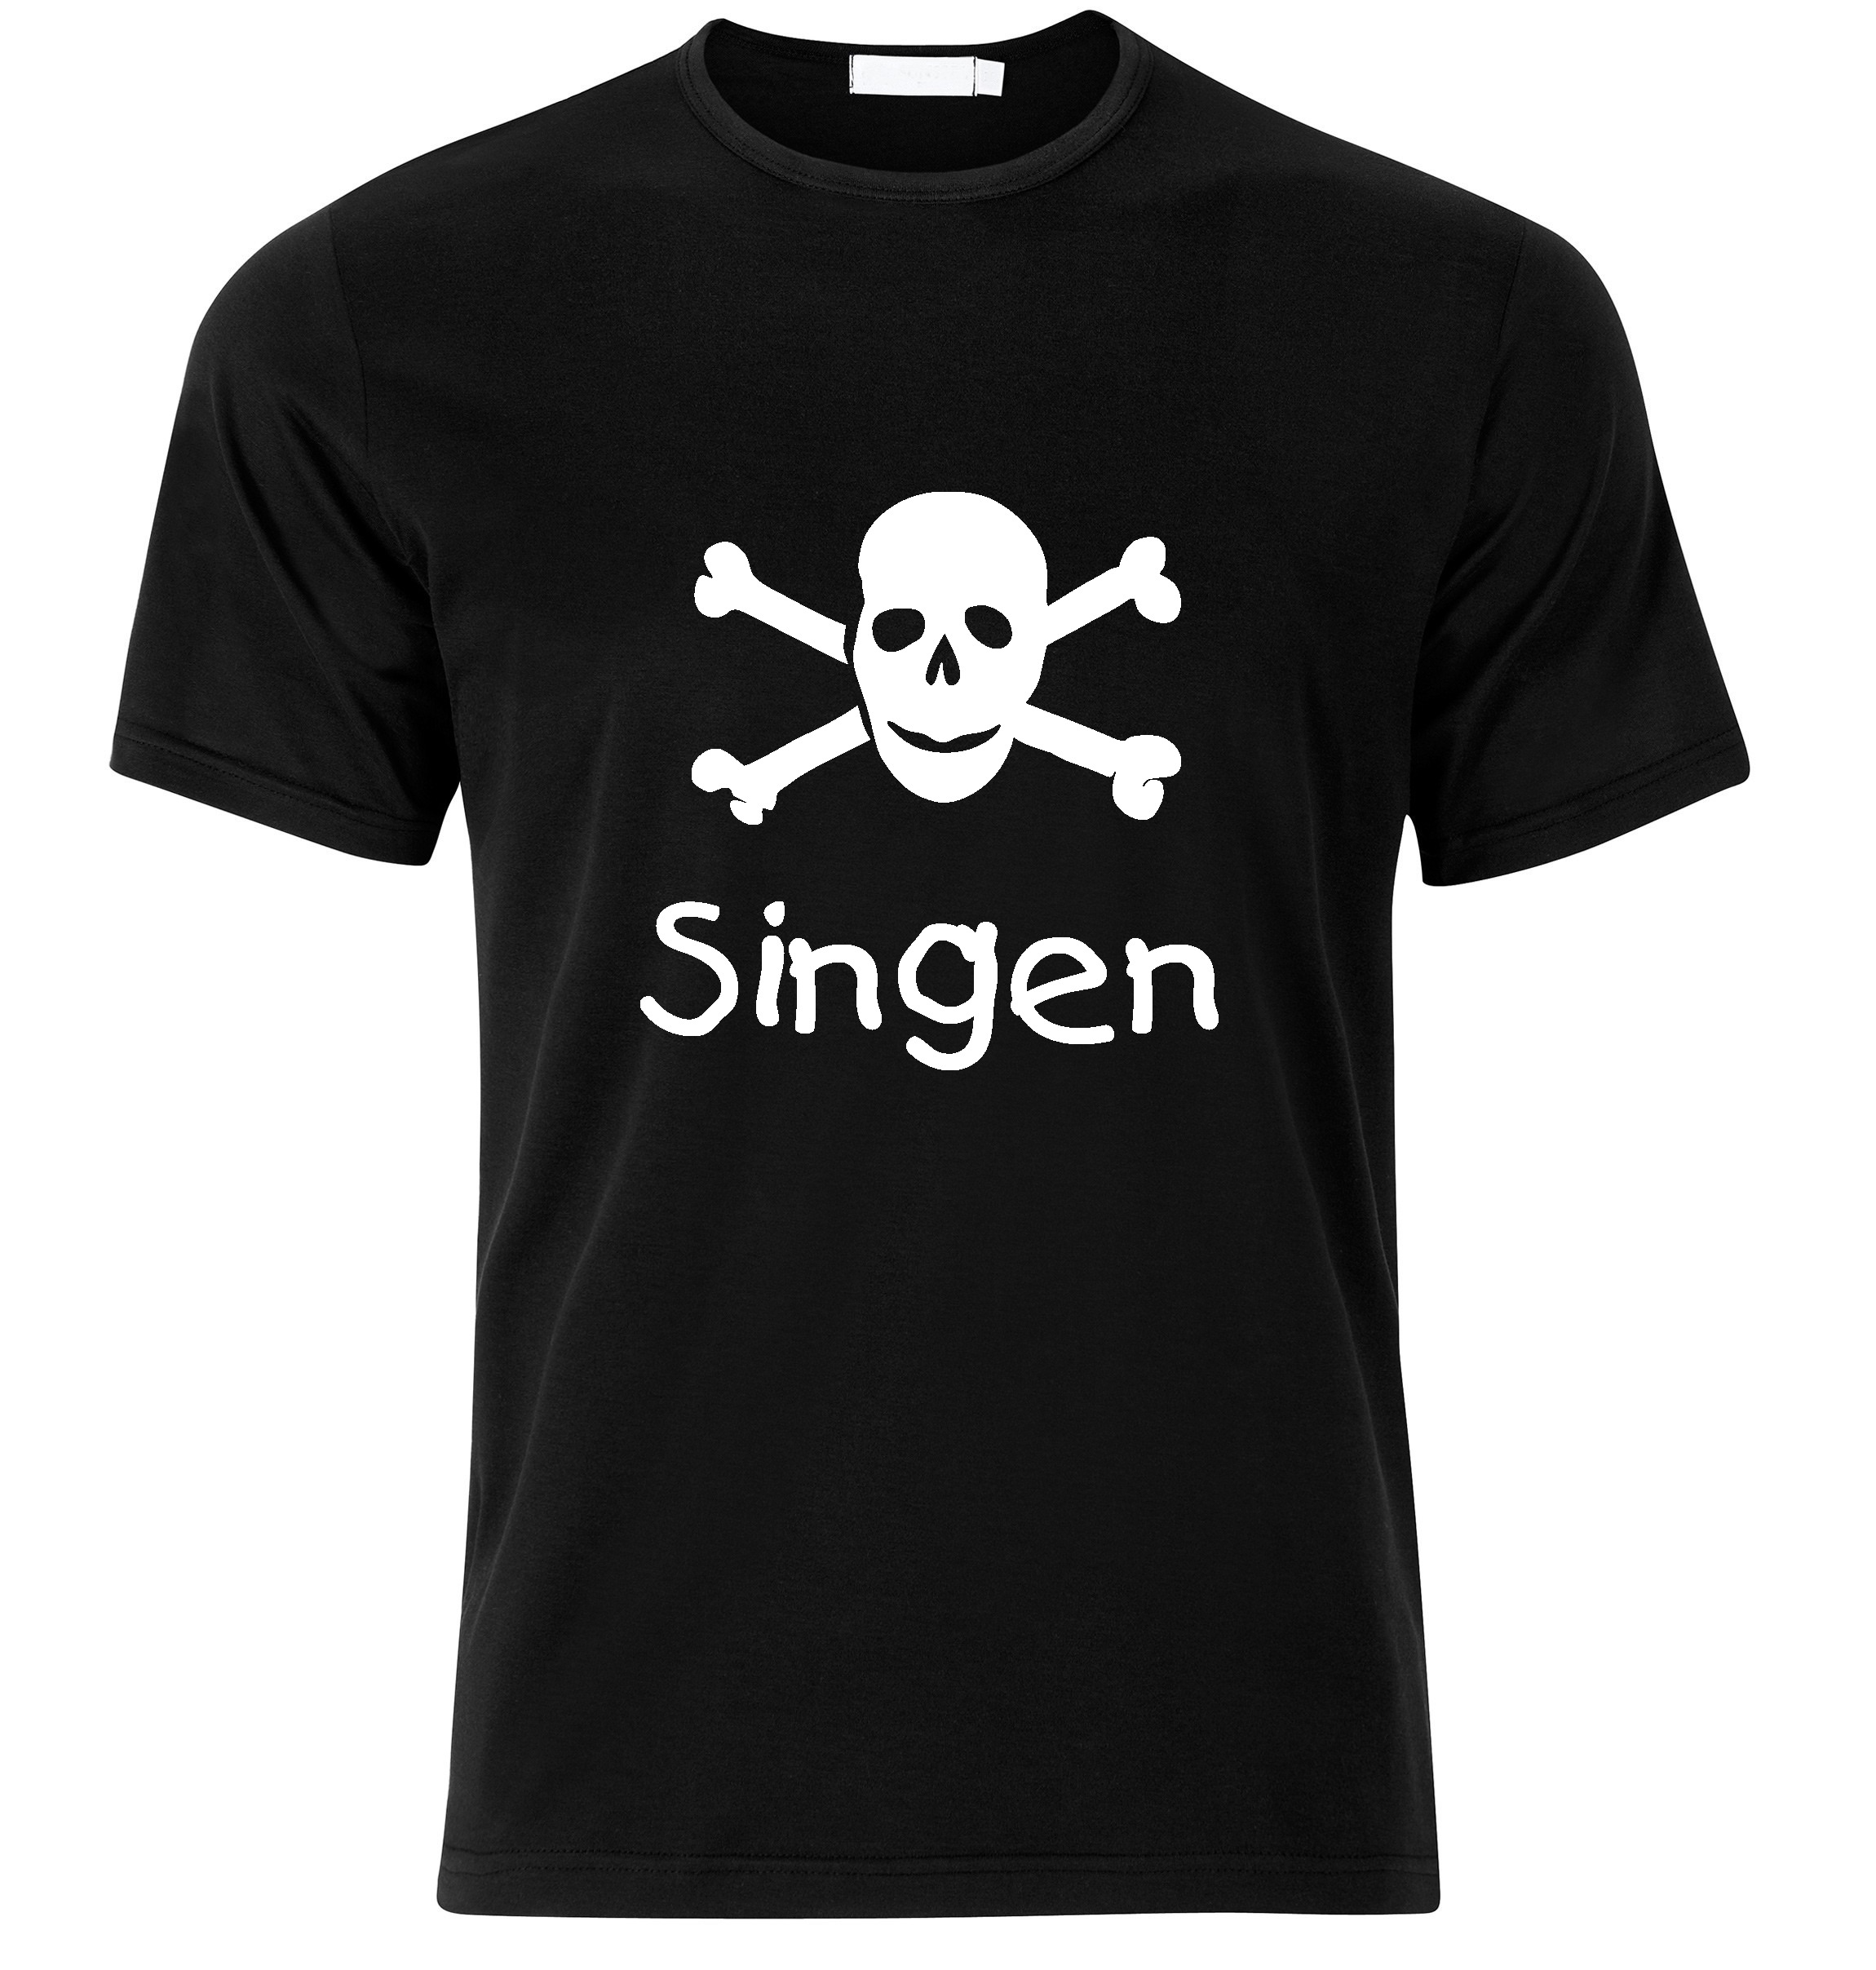 T-Shirt Singen Jolly Roger, Totenkopf